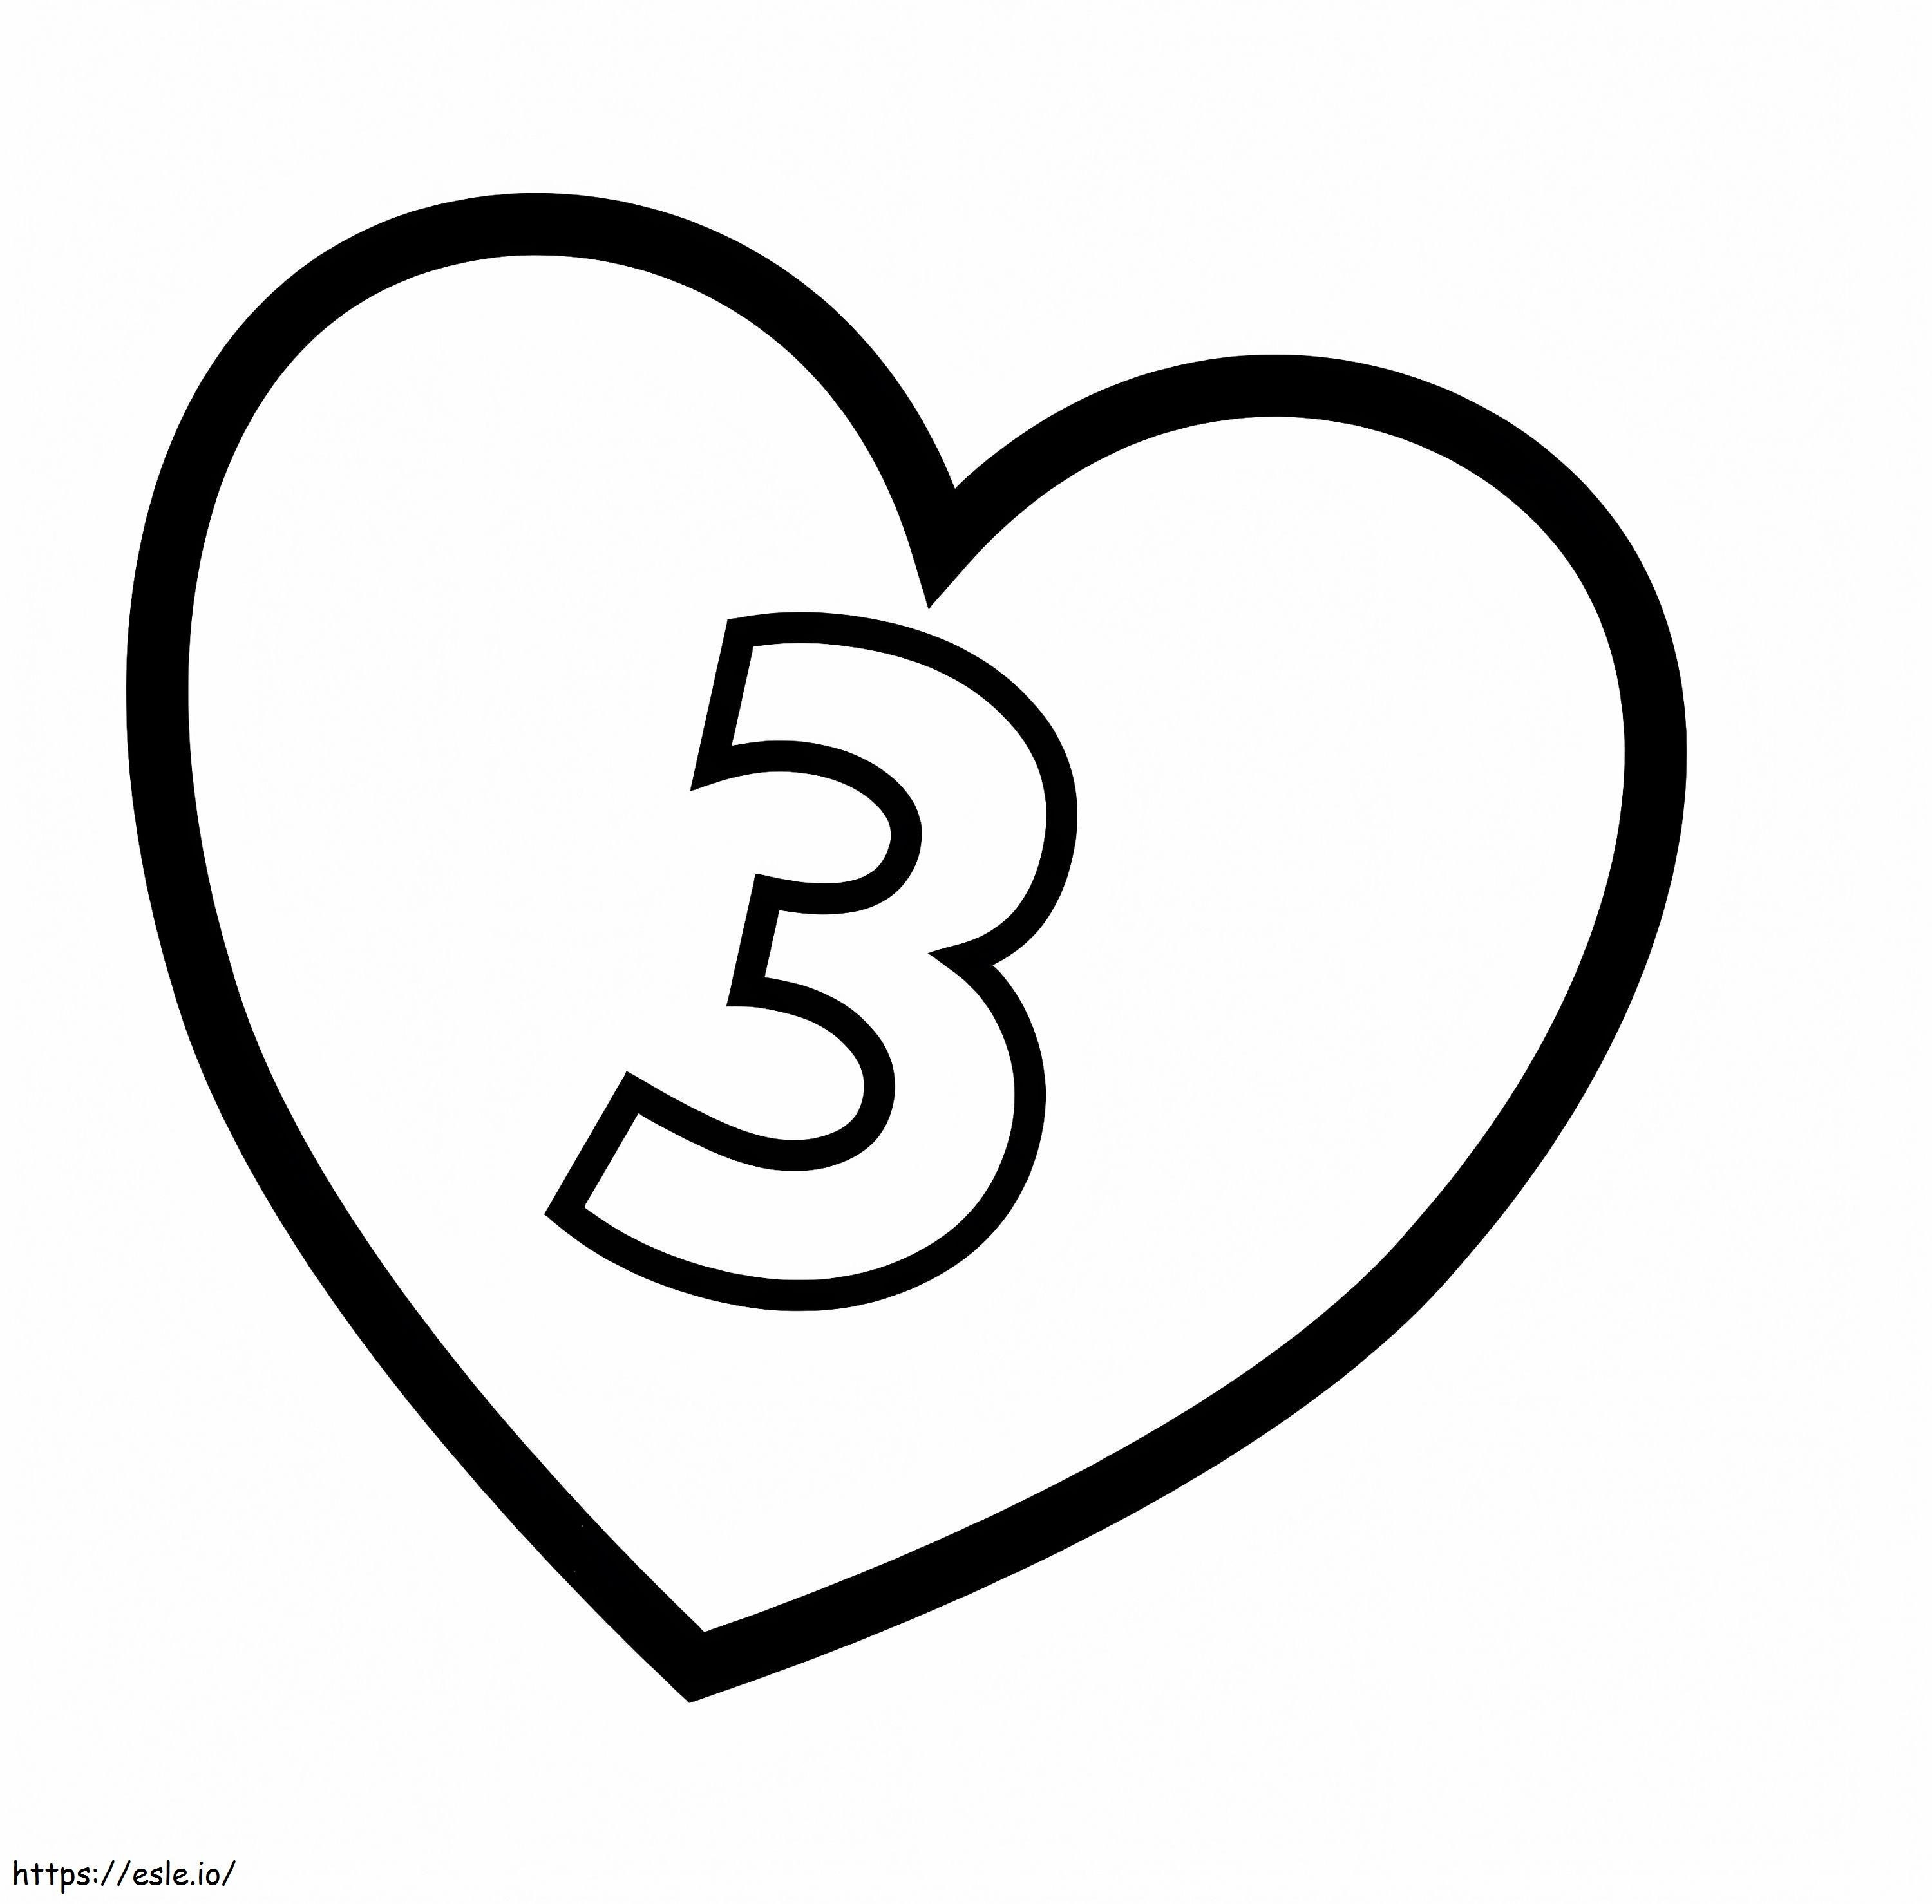 Numer 3 w sercu kolorowanka